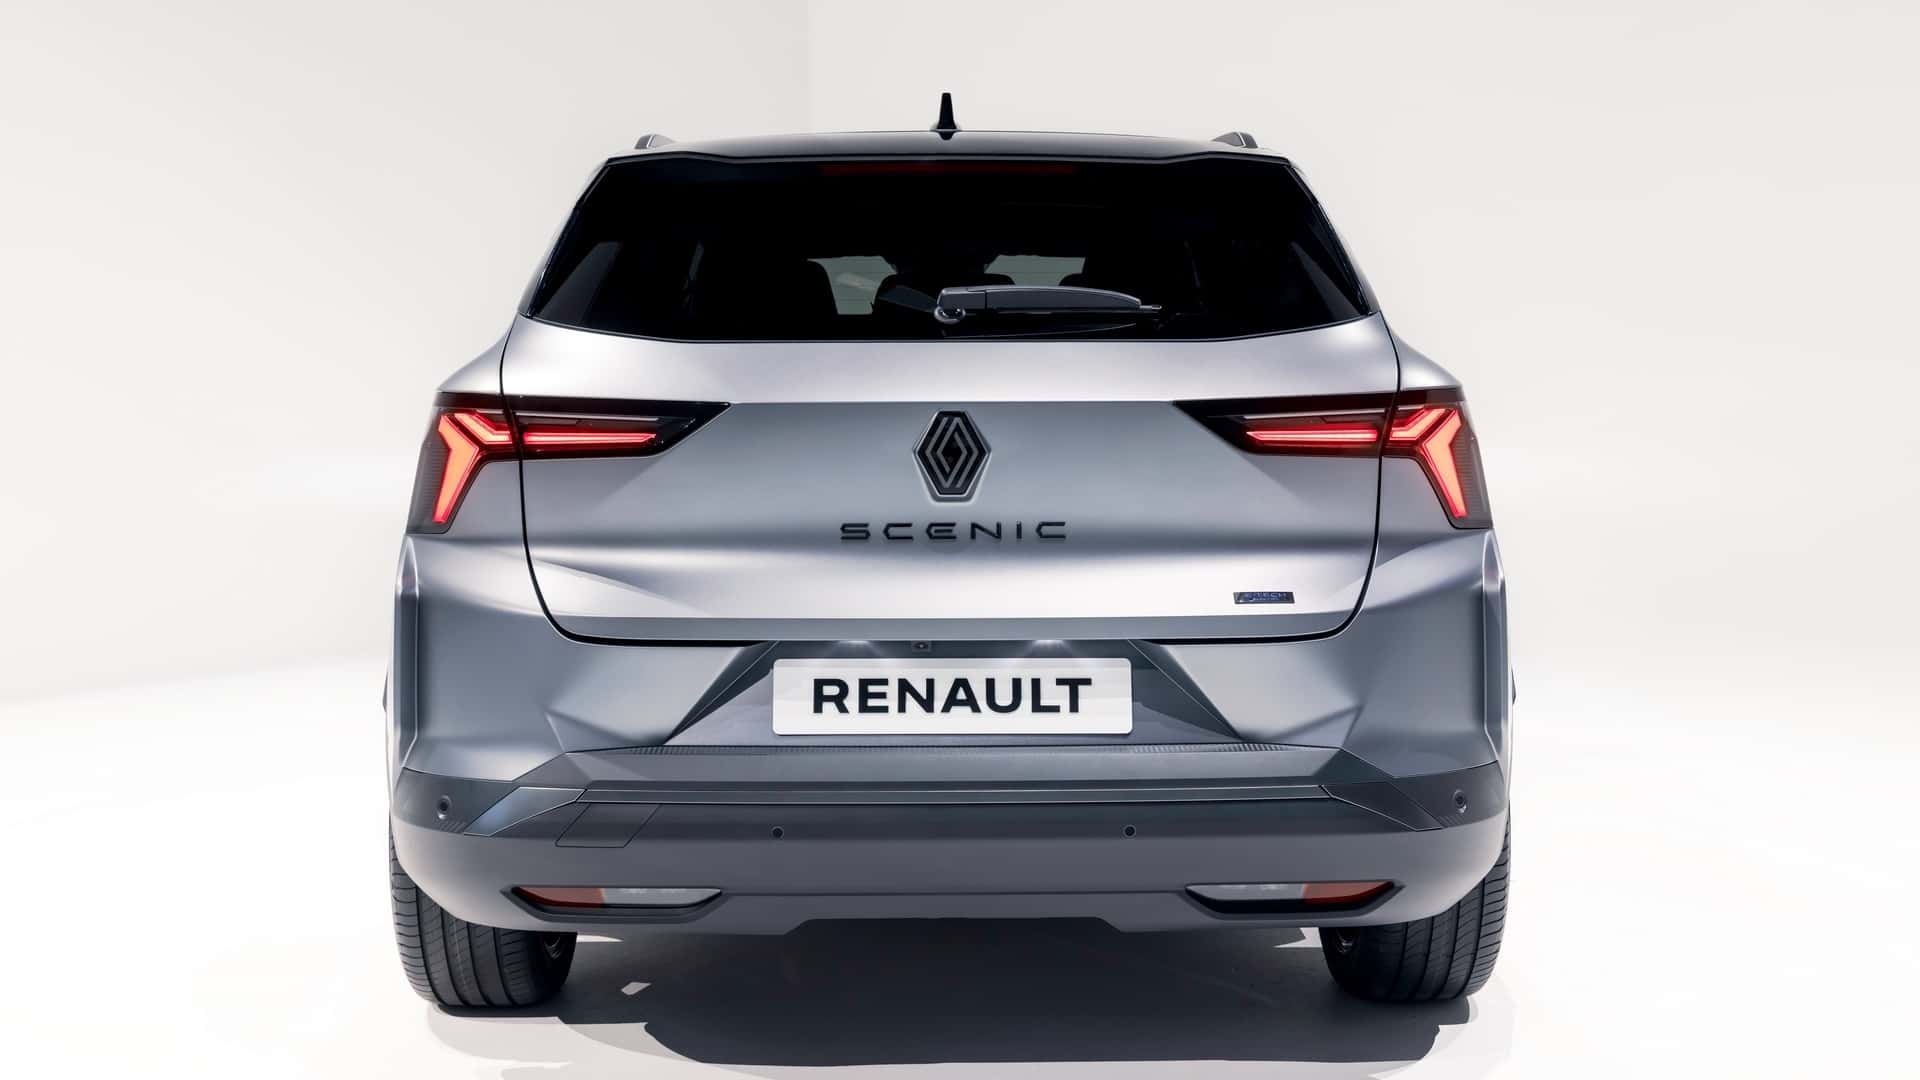 Renault Scenic стал электрическим кроссовером с запасом хода в 620 км